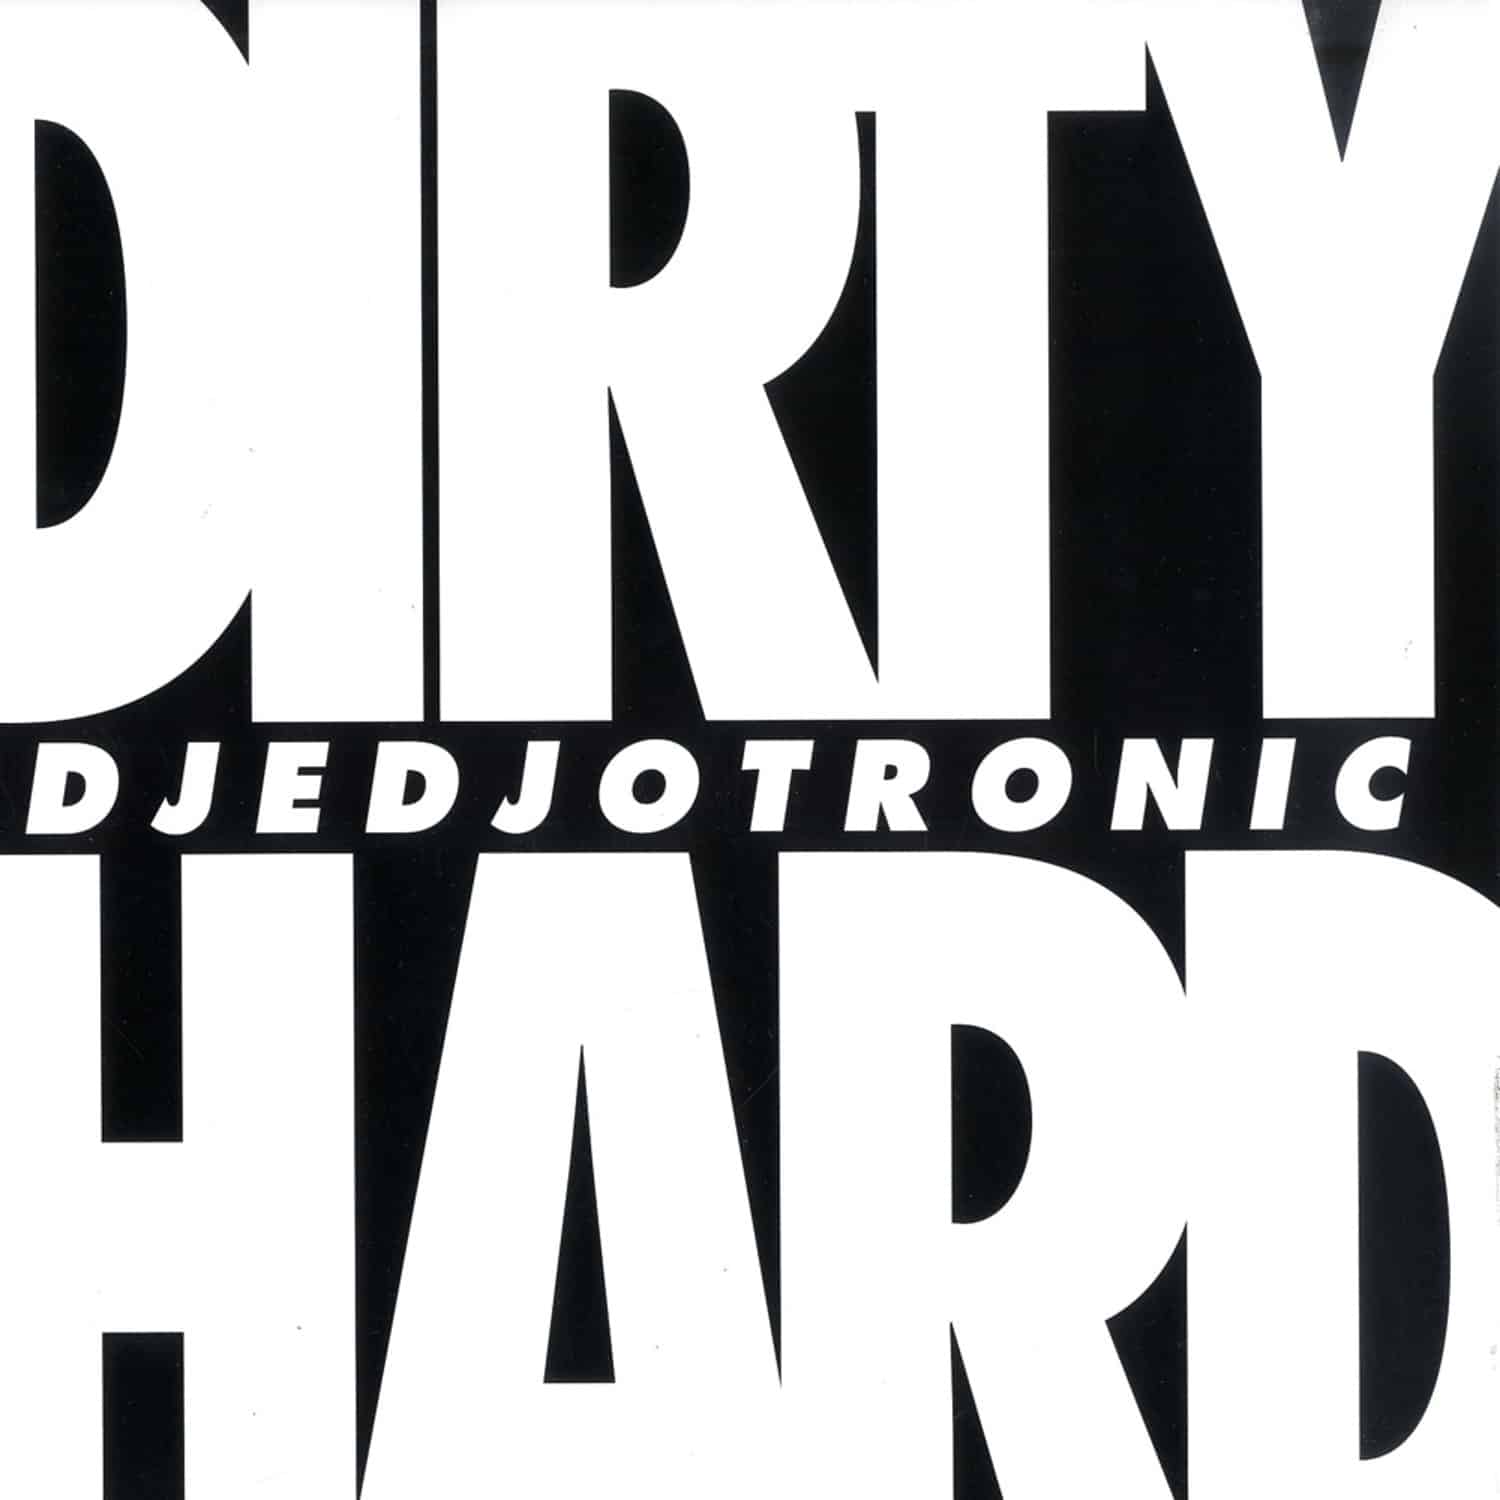 DJedjotronic - DIRTY & HARD EP / BOYSNOIZE RMX